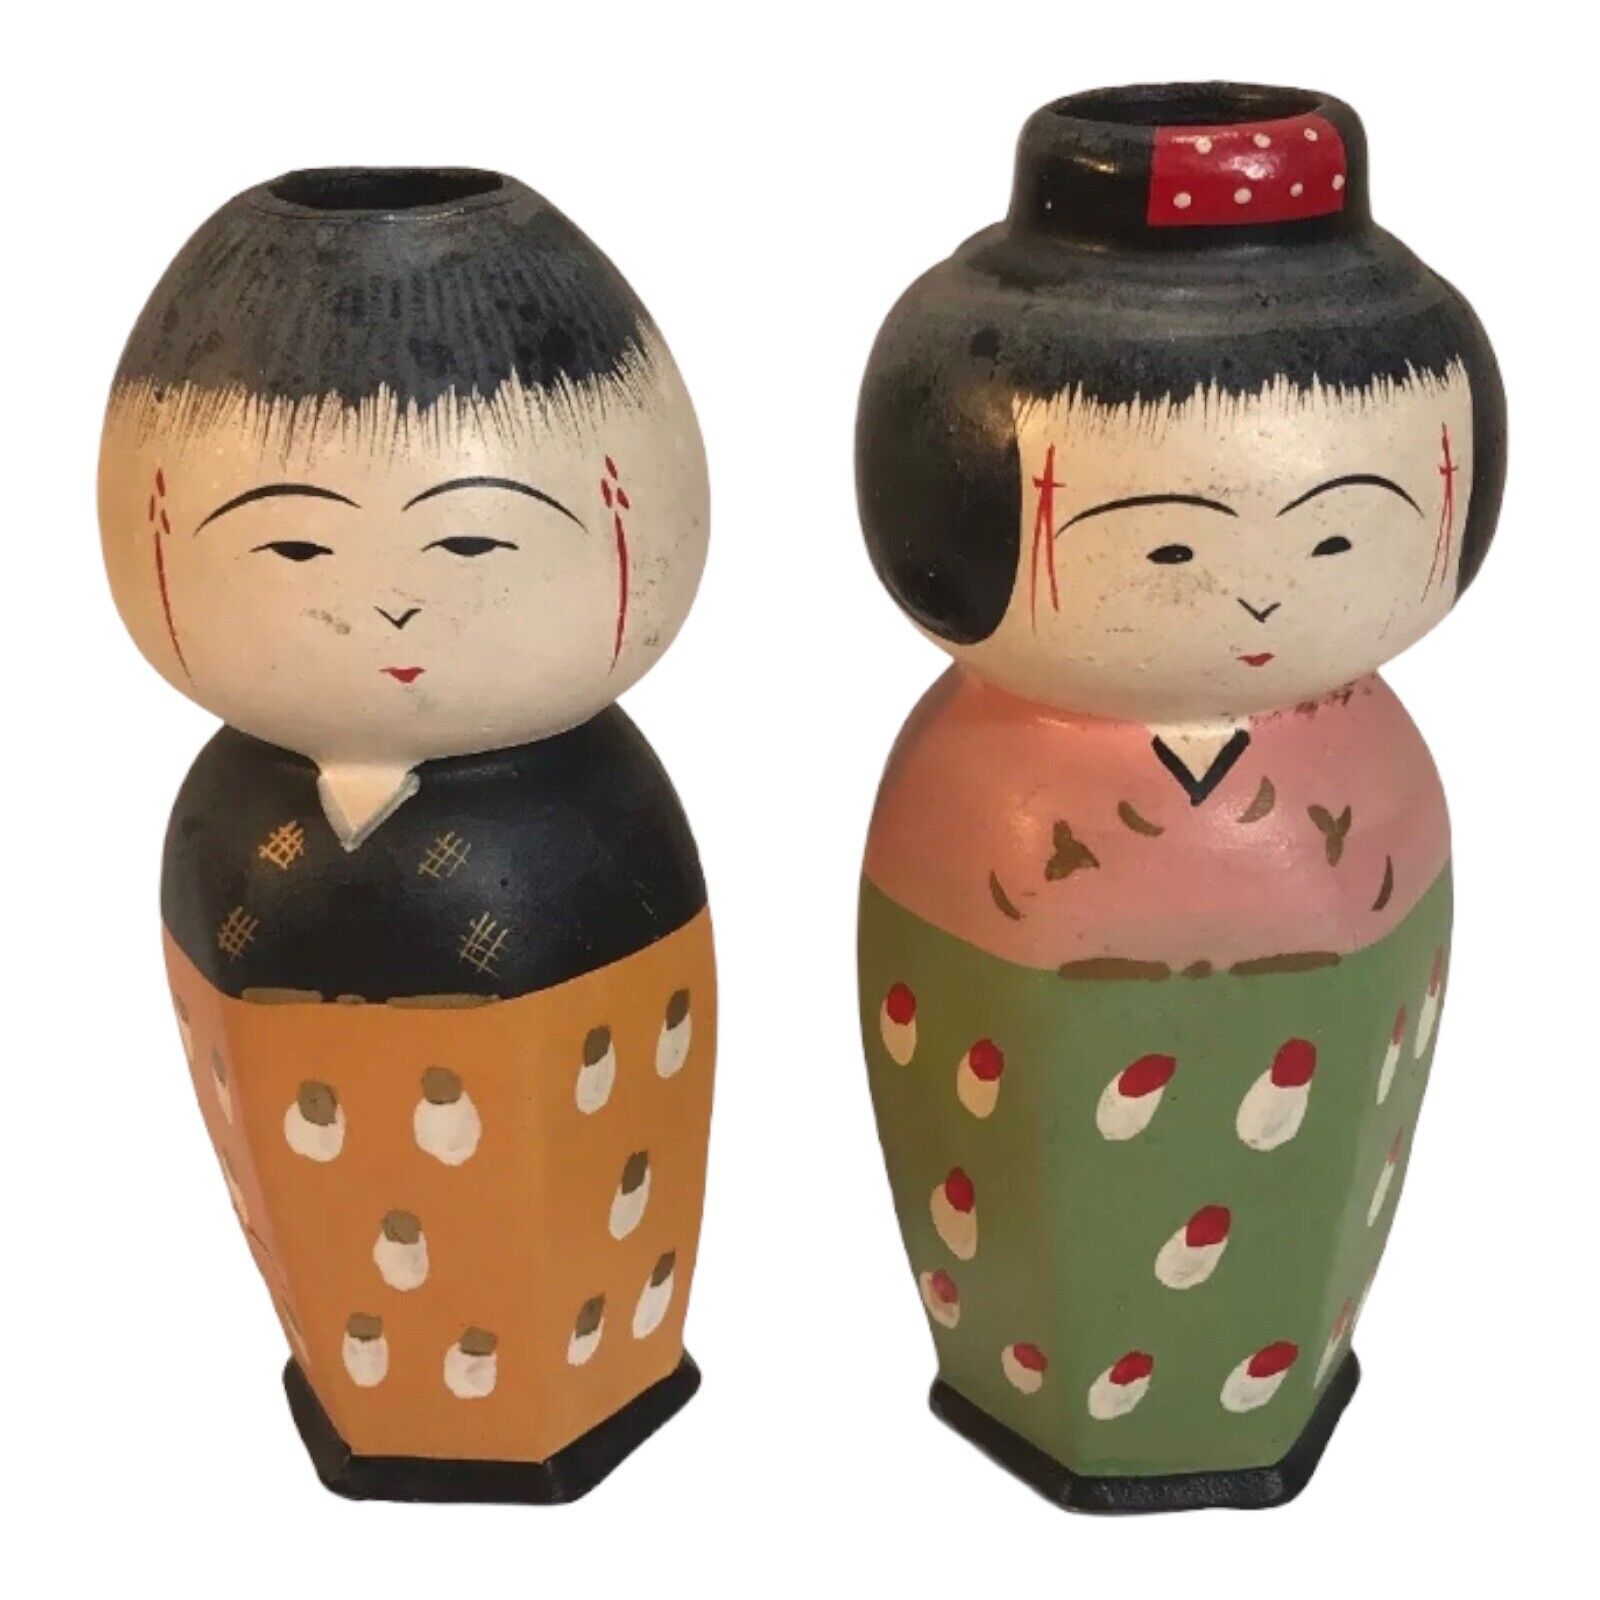 Japanese Figures Ceramic Vintage Vases Beautiful Hand-painted Figurines